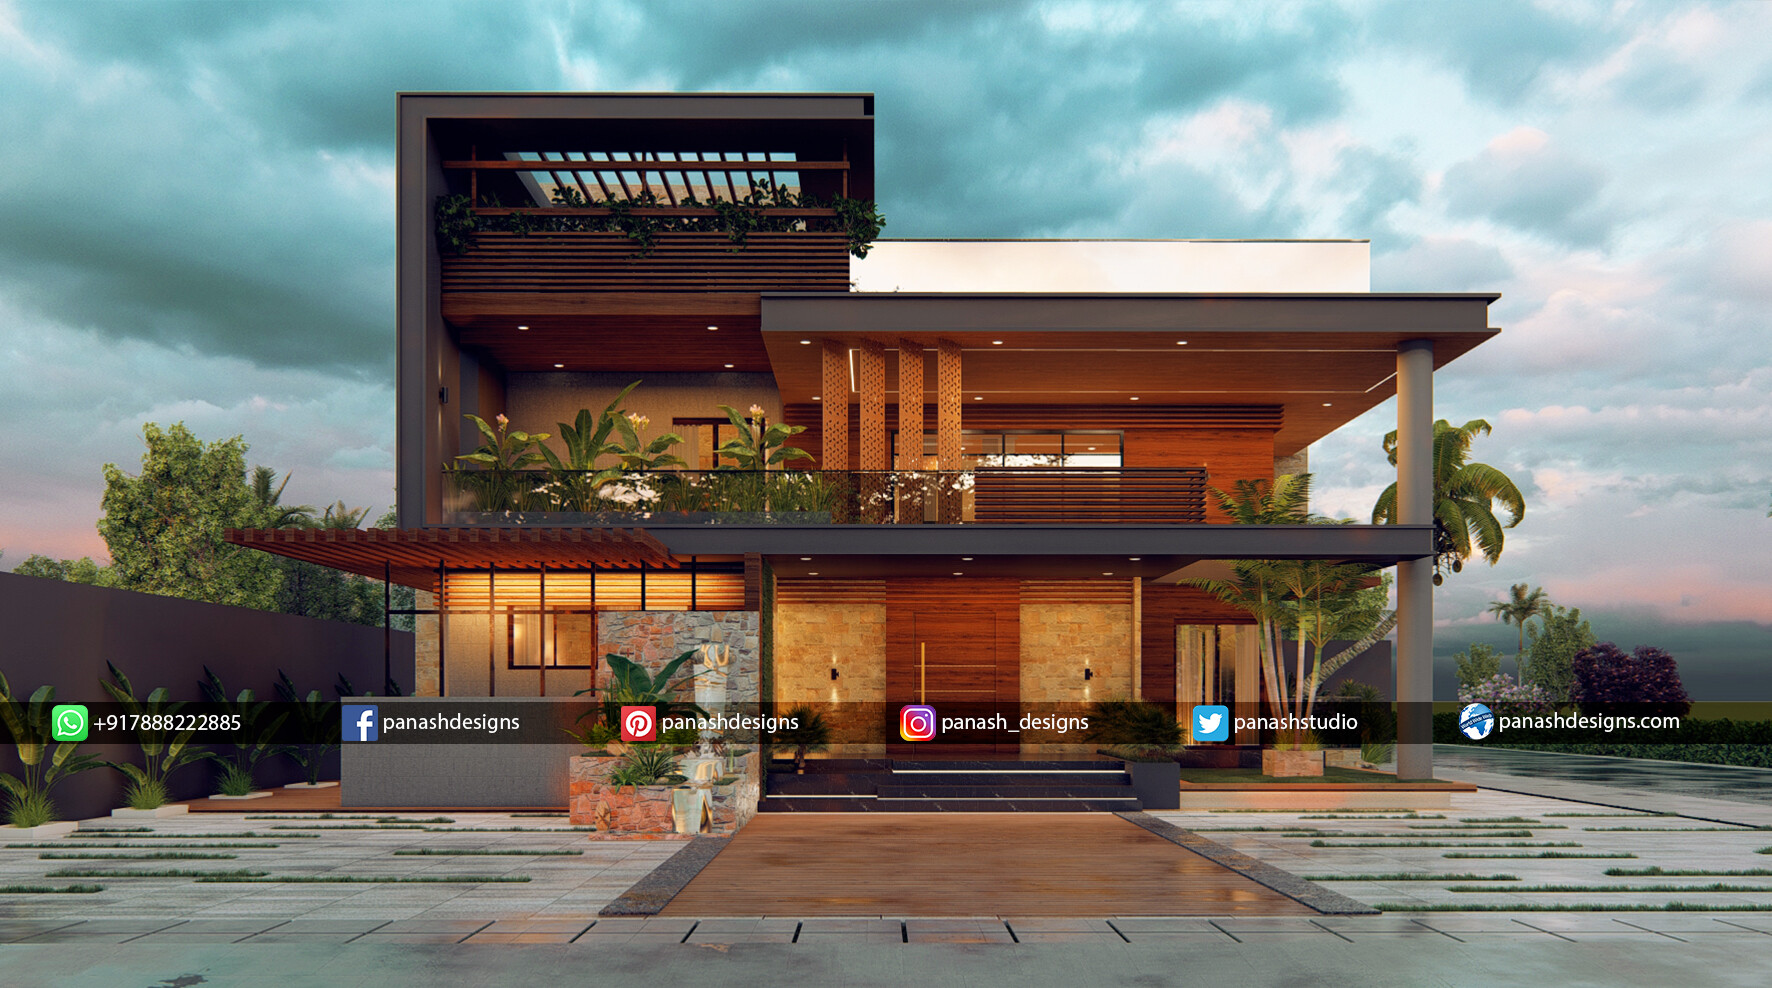 ArtStation - Modern Farm House Design